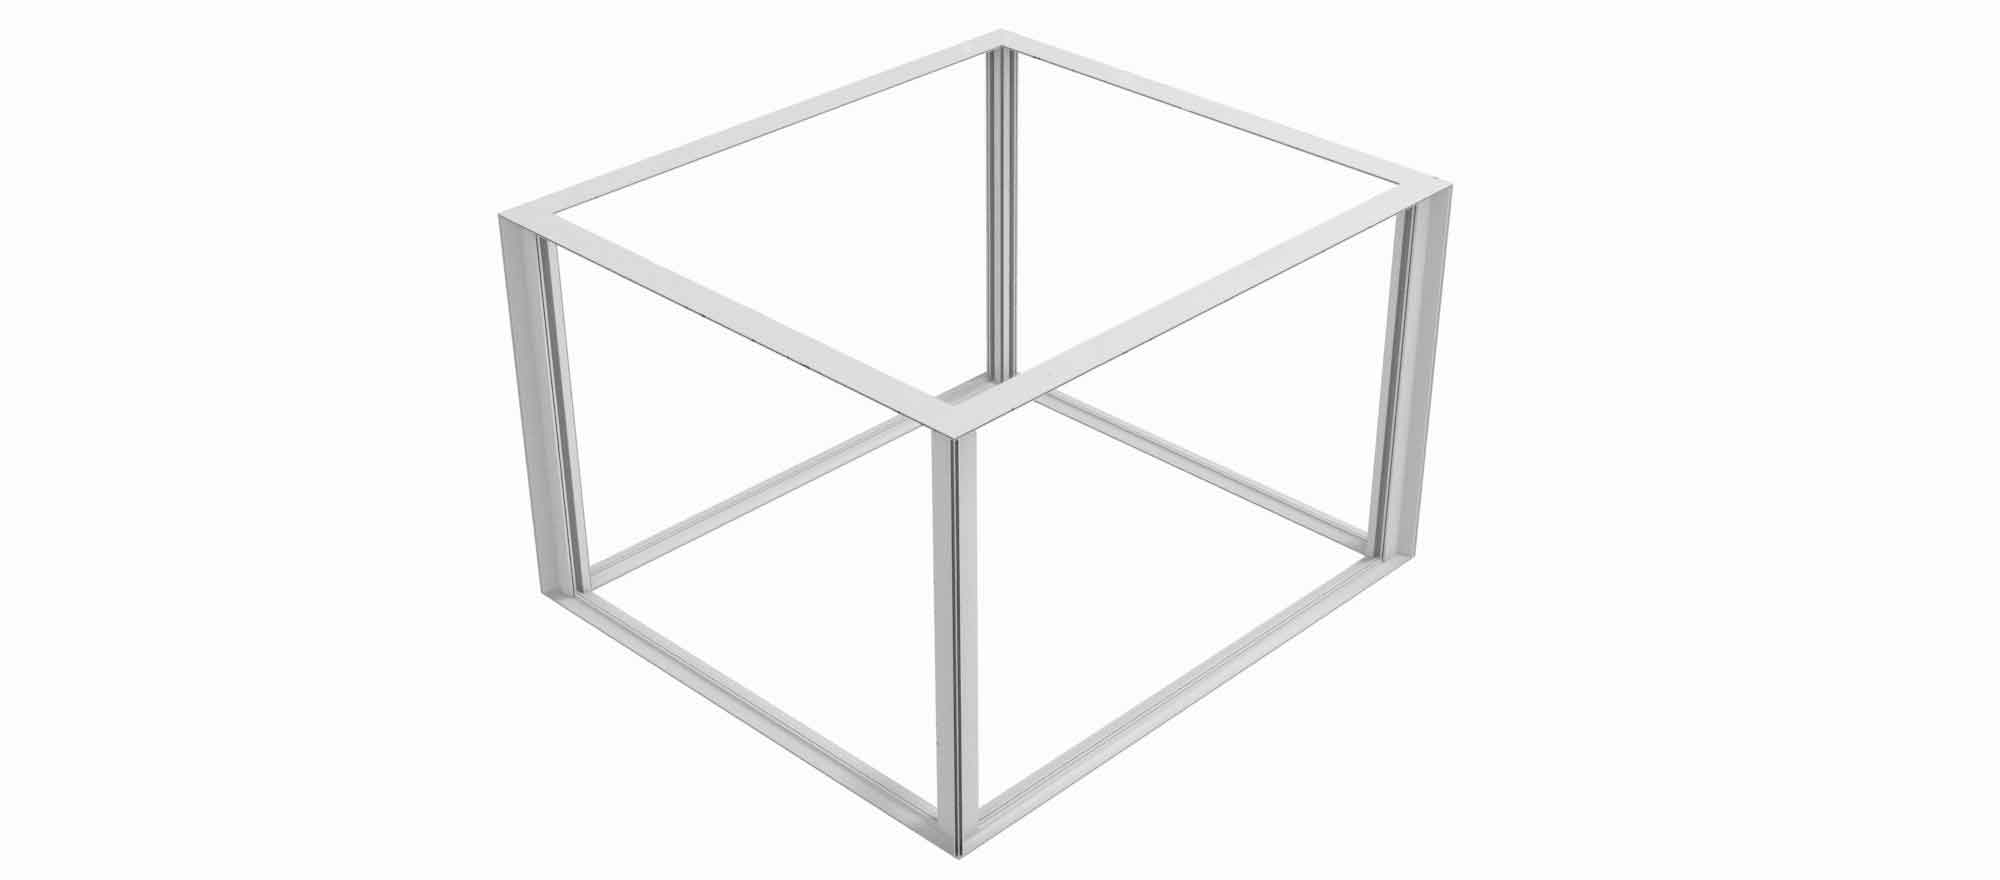 cube-suspended-seg-frame